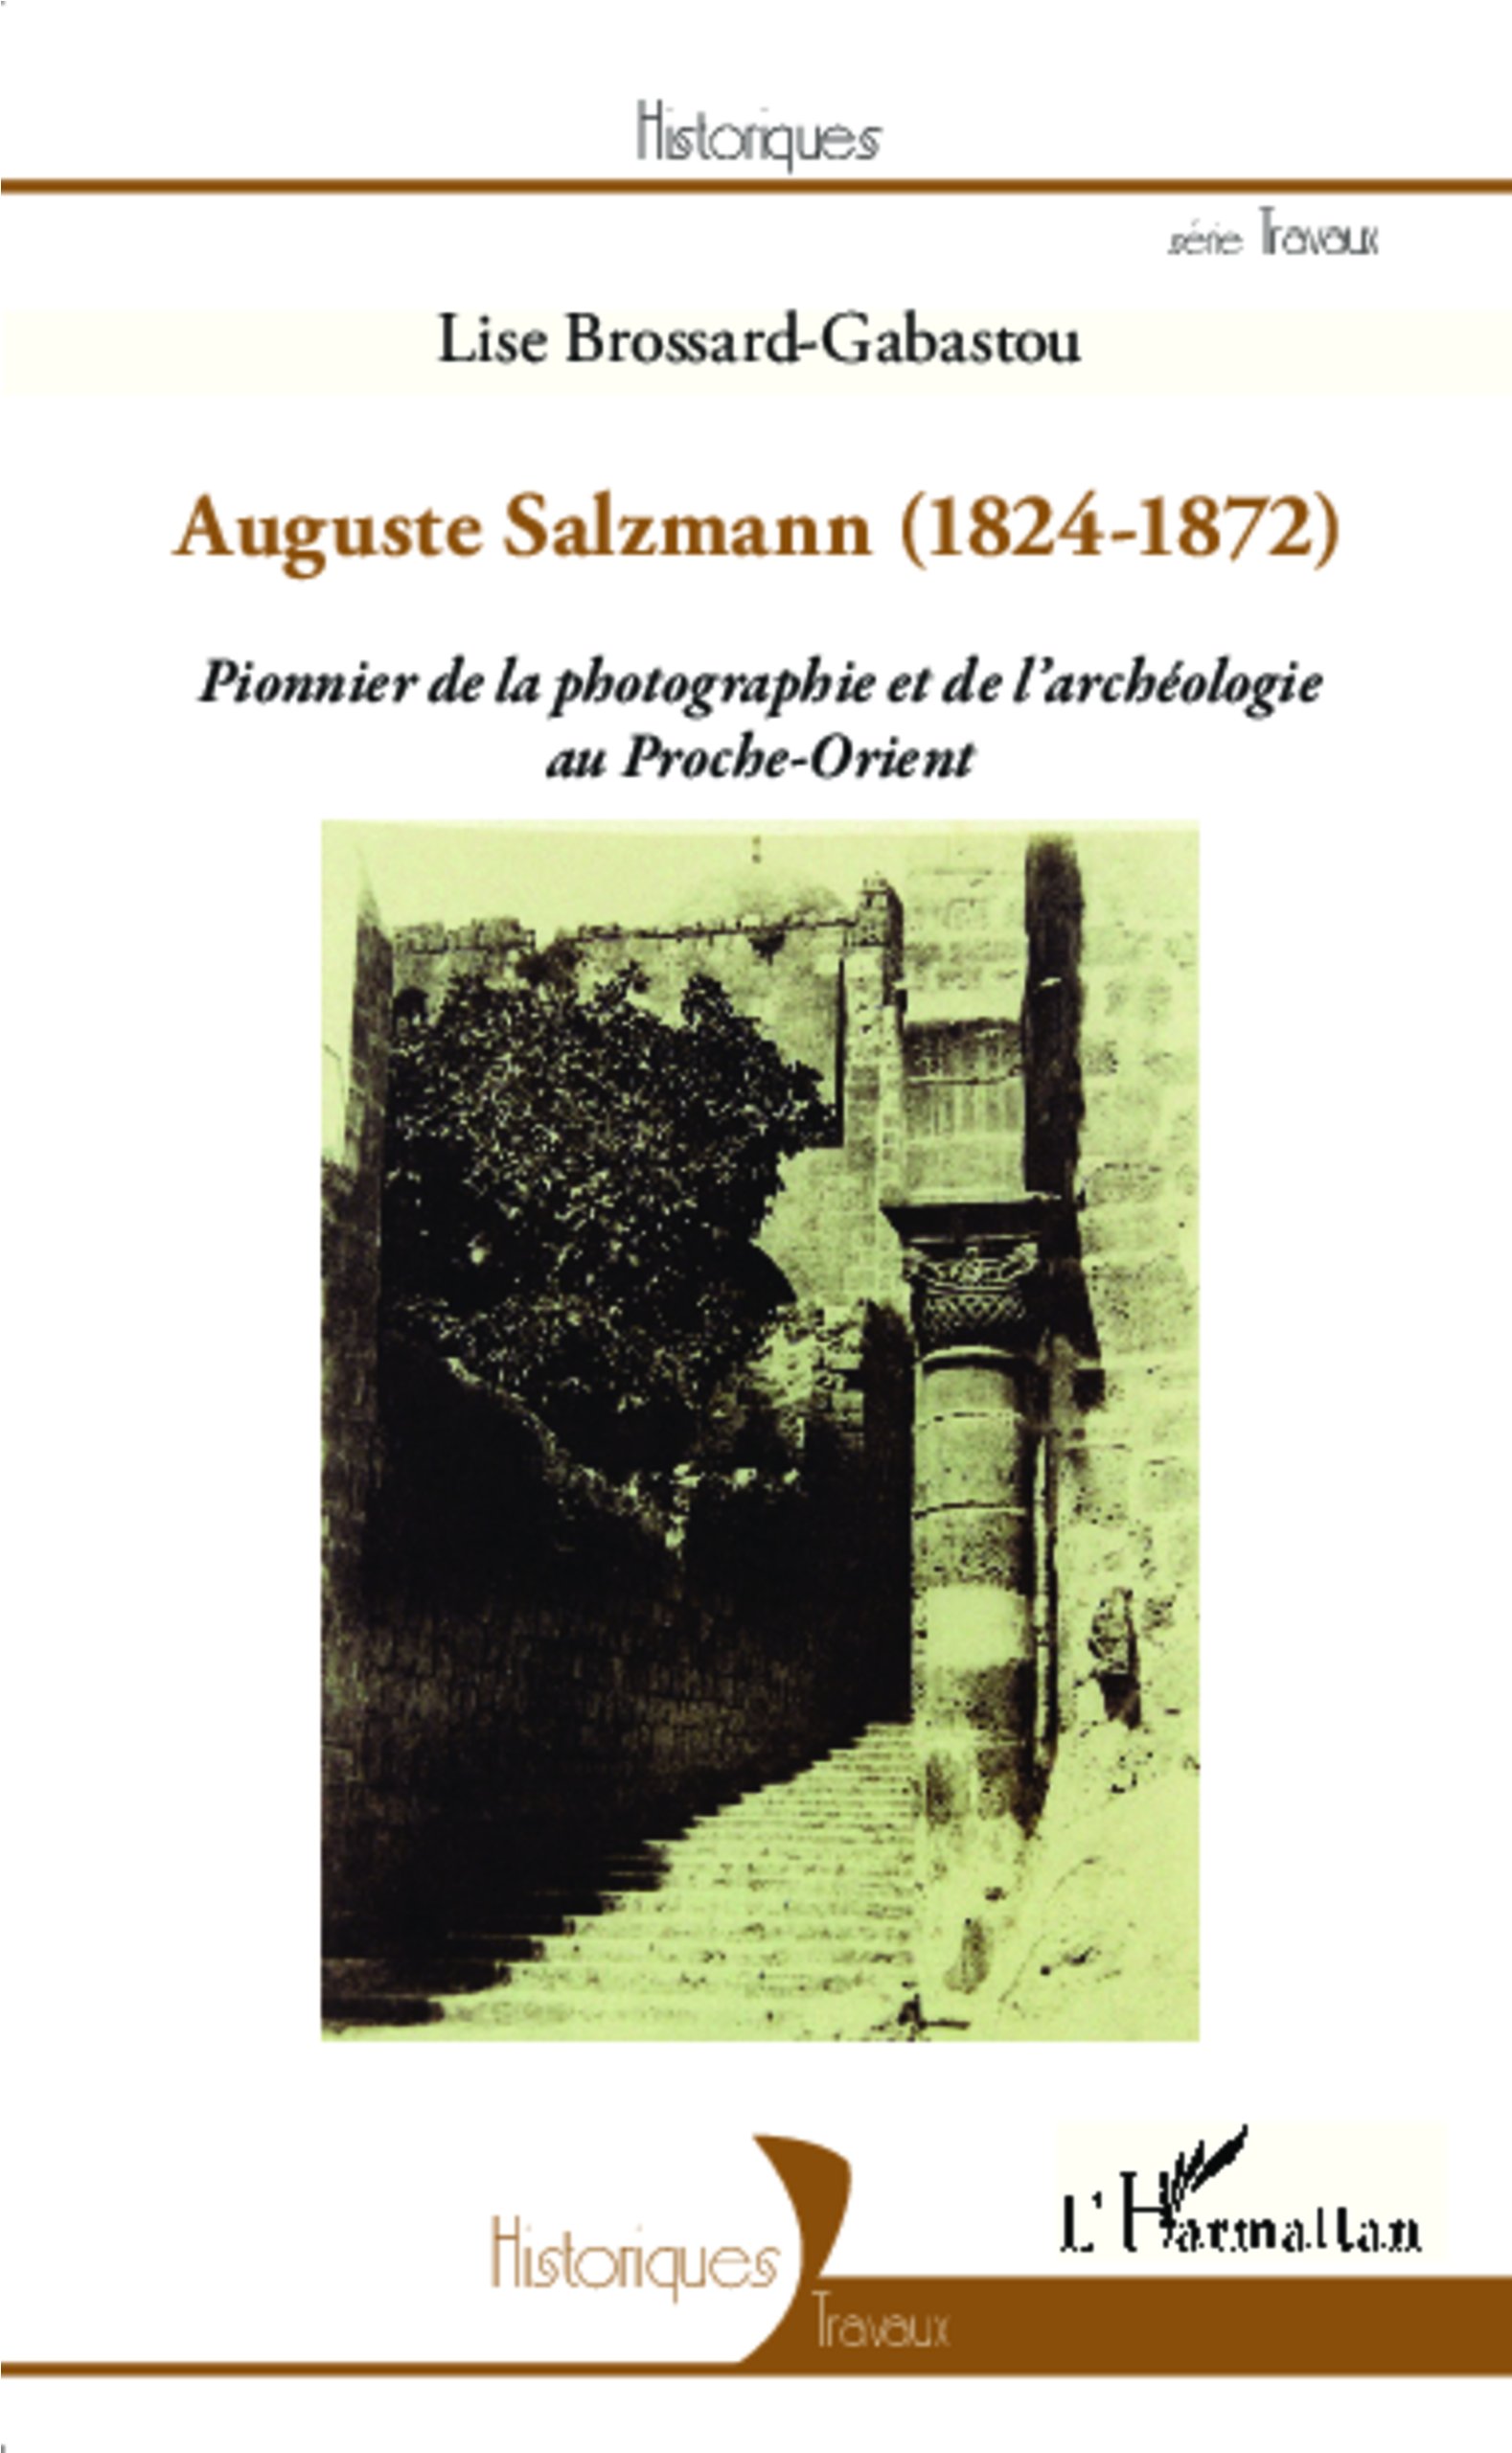 Auguste Salzmann (1824-1872). Pionnier de la photographie et de l'archéologie au Proche-Orient, 2013, 152 p.